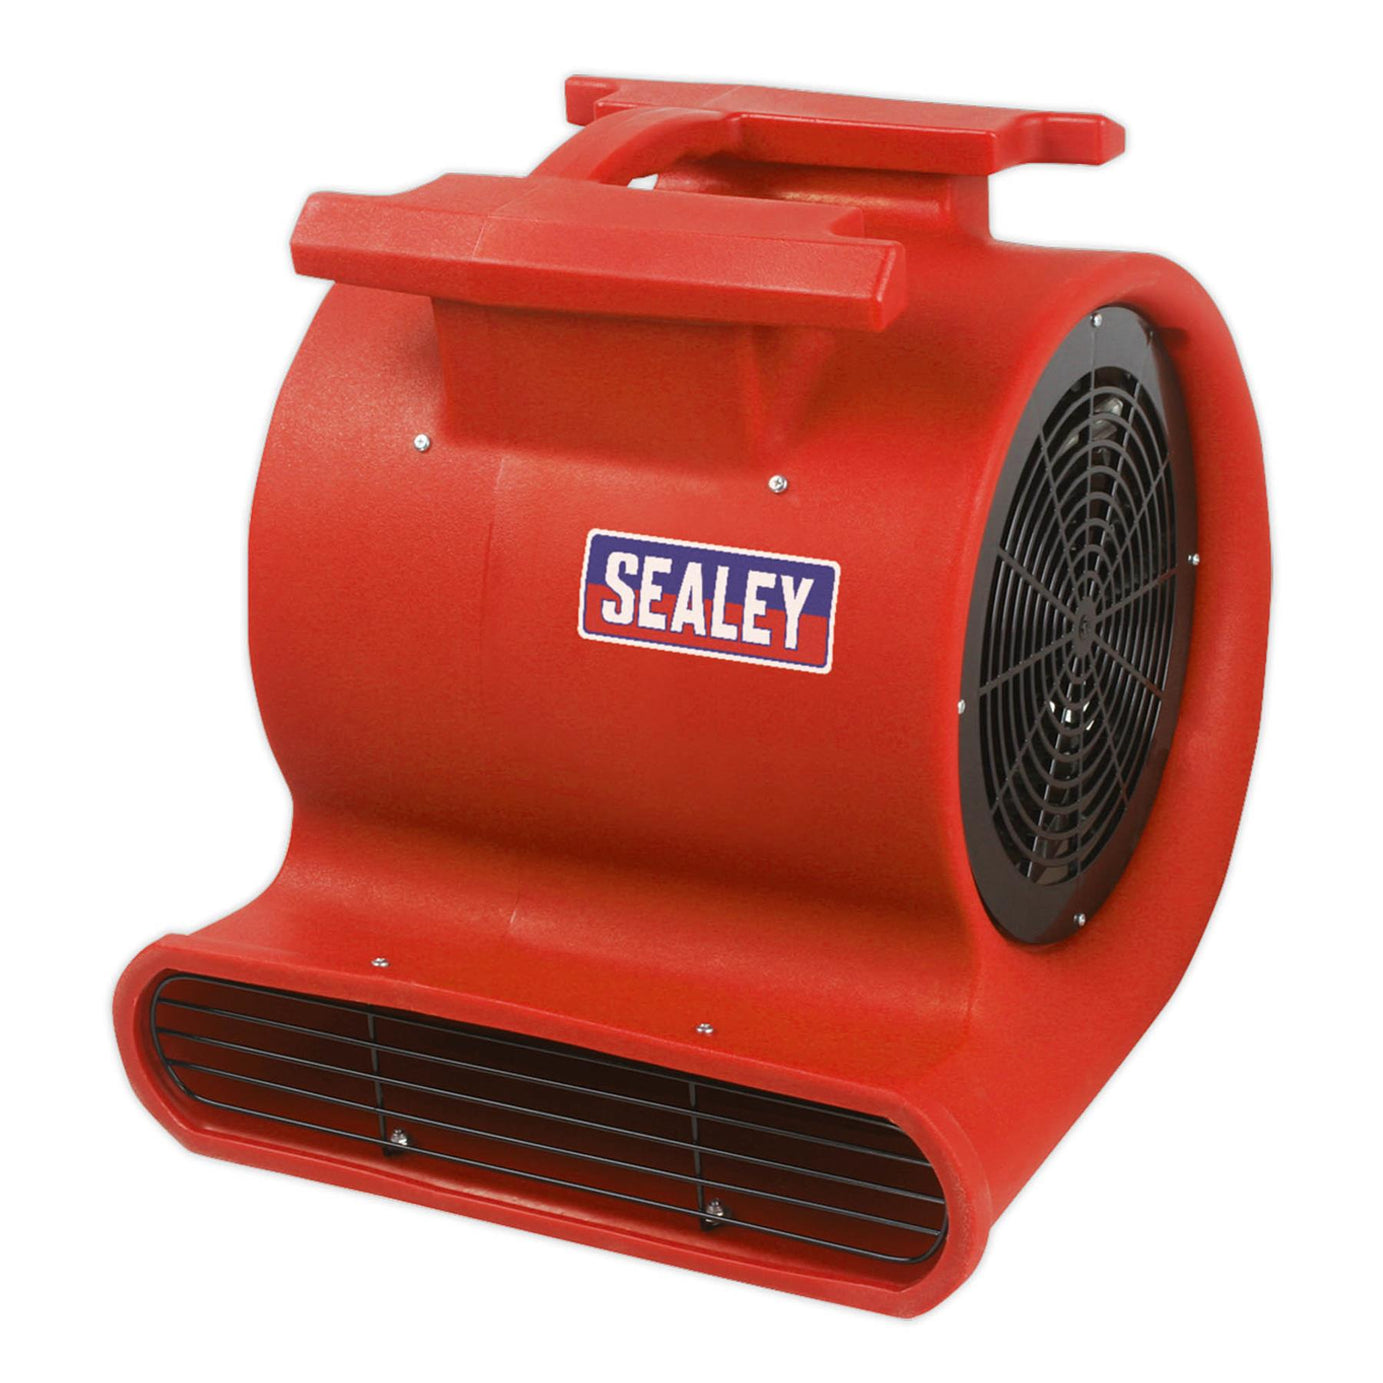 Sealey Air Dryer/Blower 2860cfm 230V Garage Workshop DIY